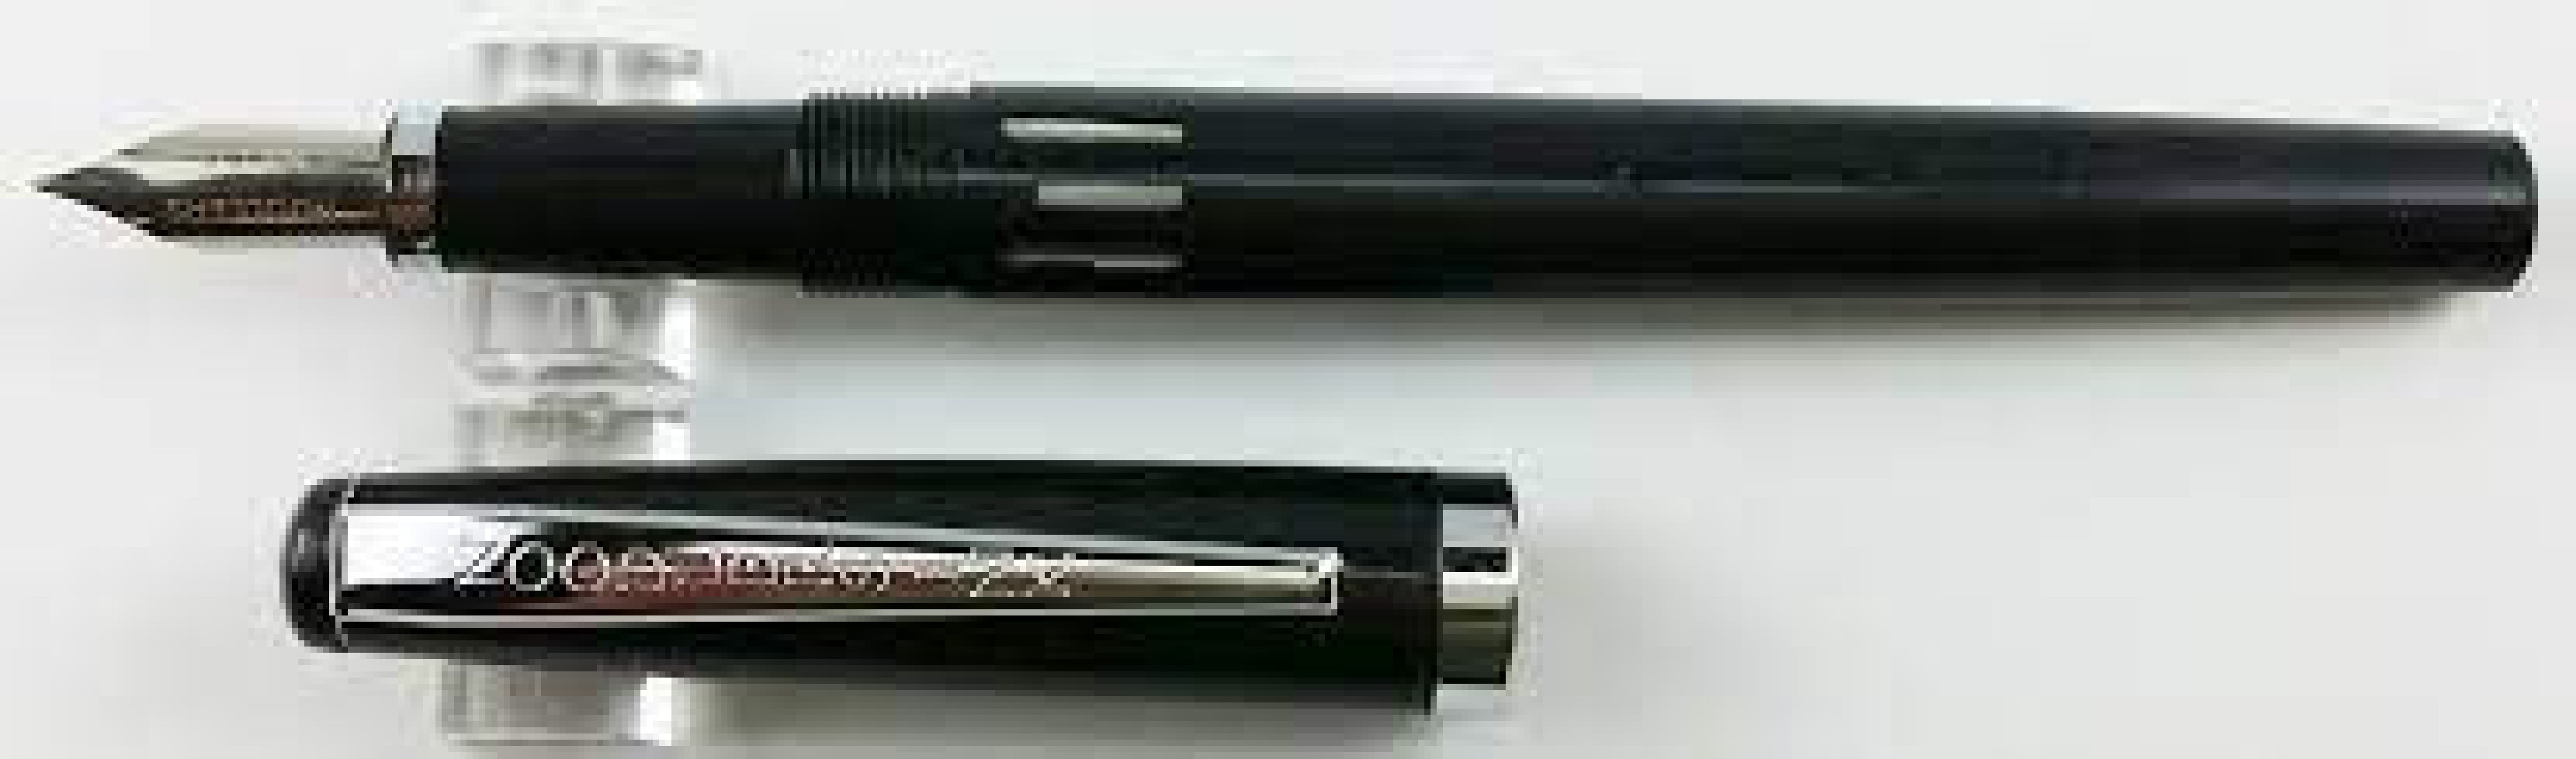 Noodlers Creaper Black Pearl Standard Flex 17047  Fountain Pen